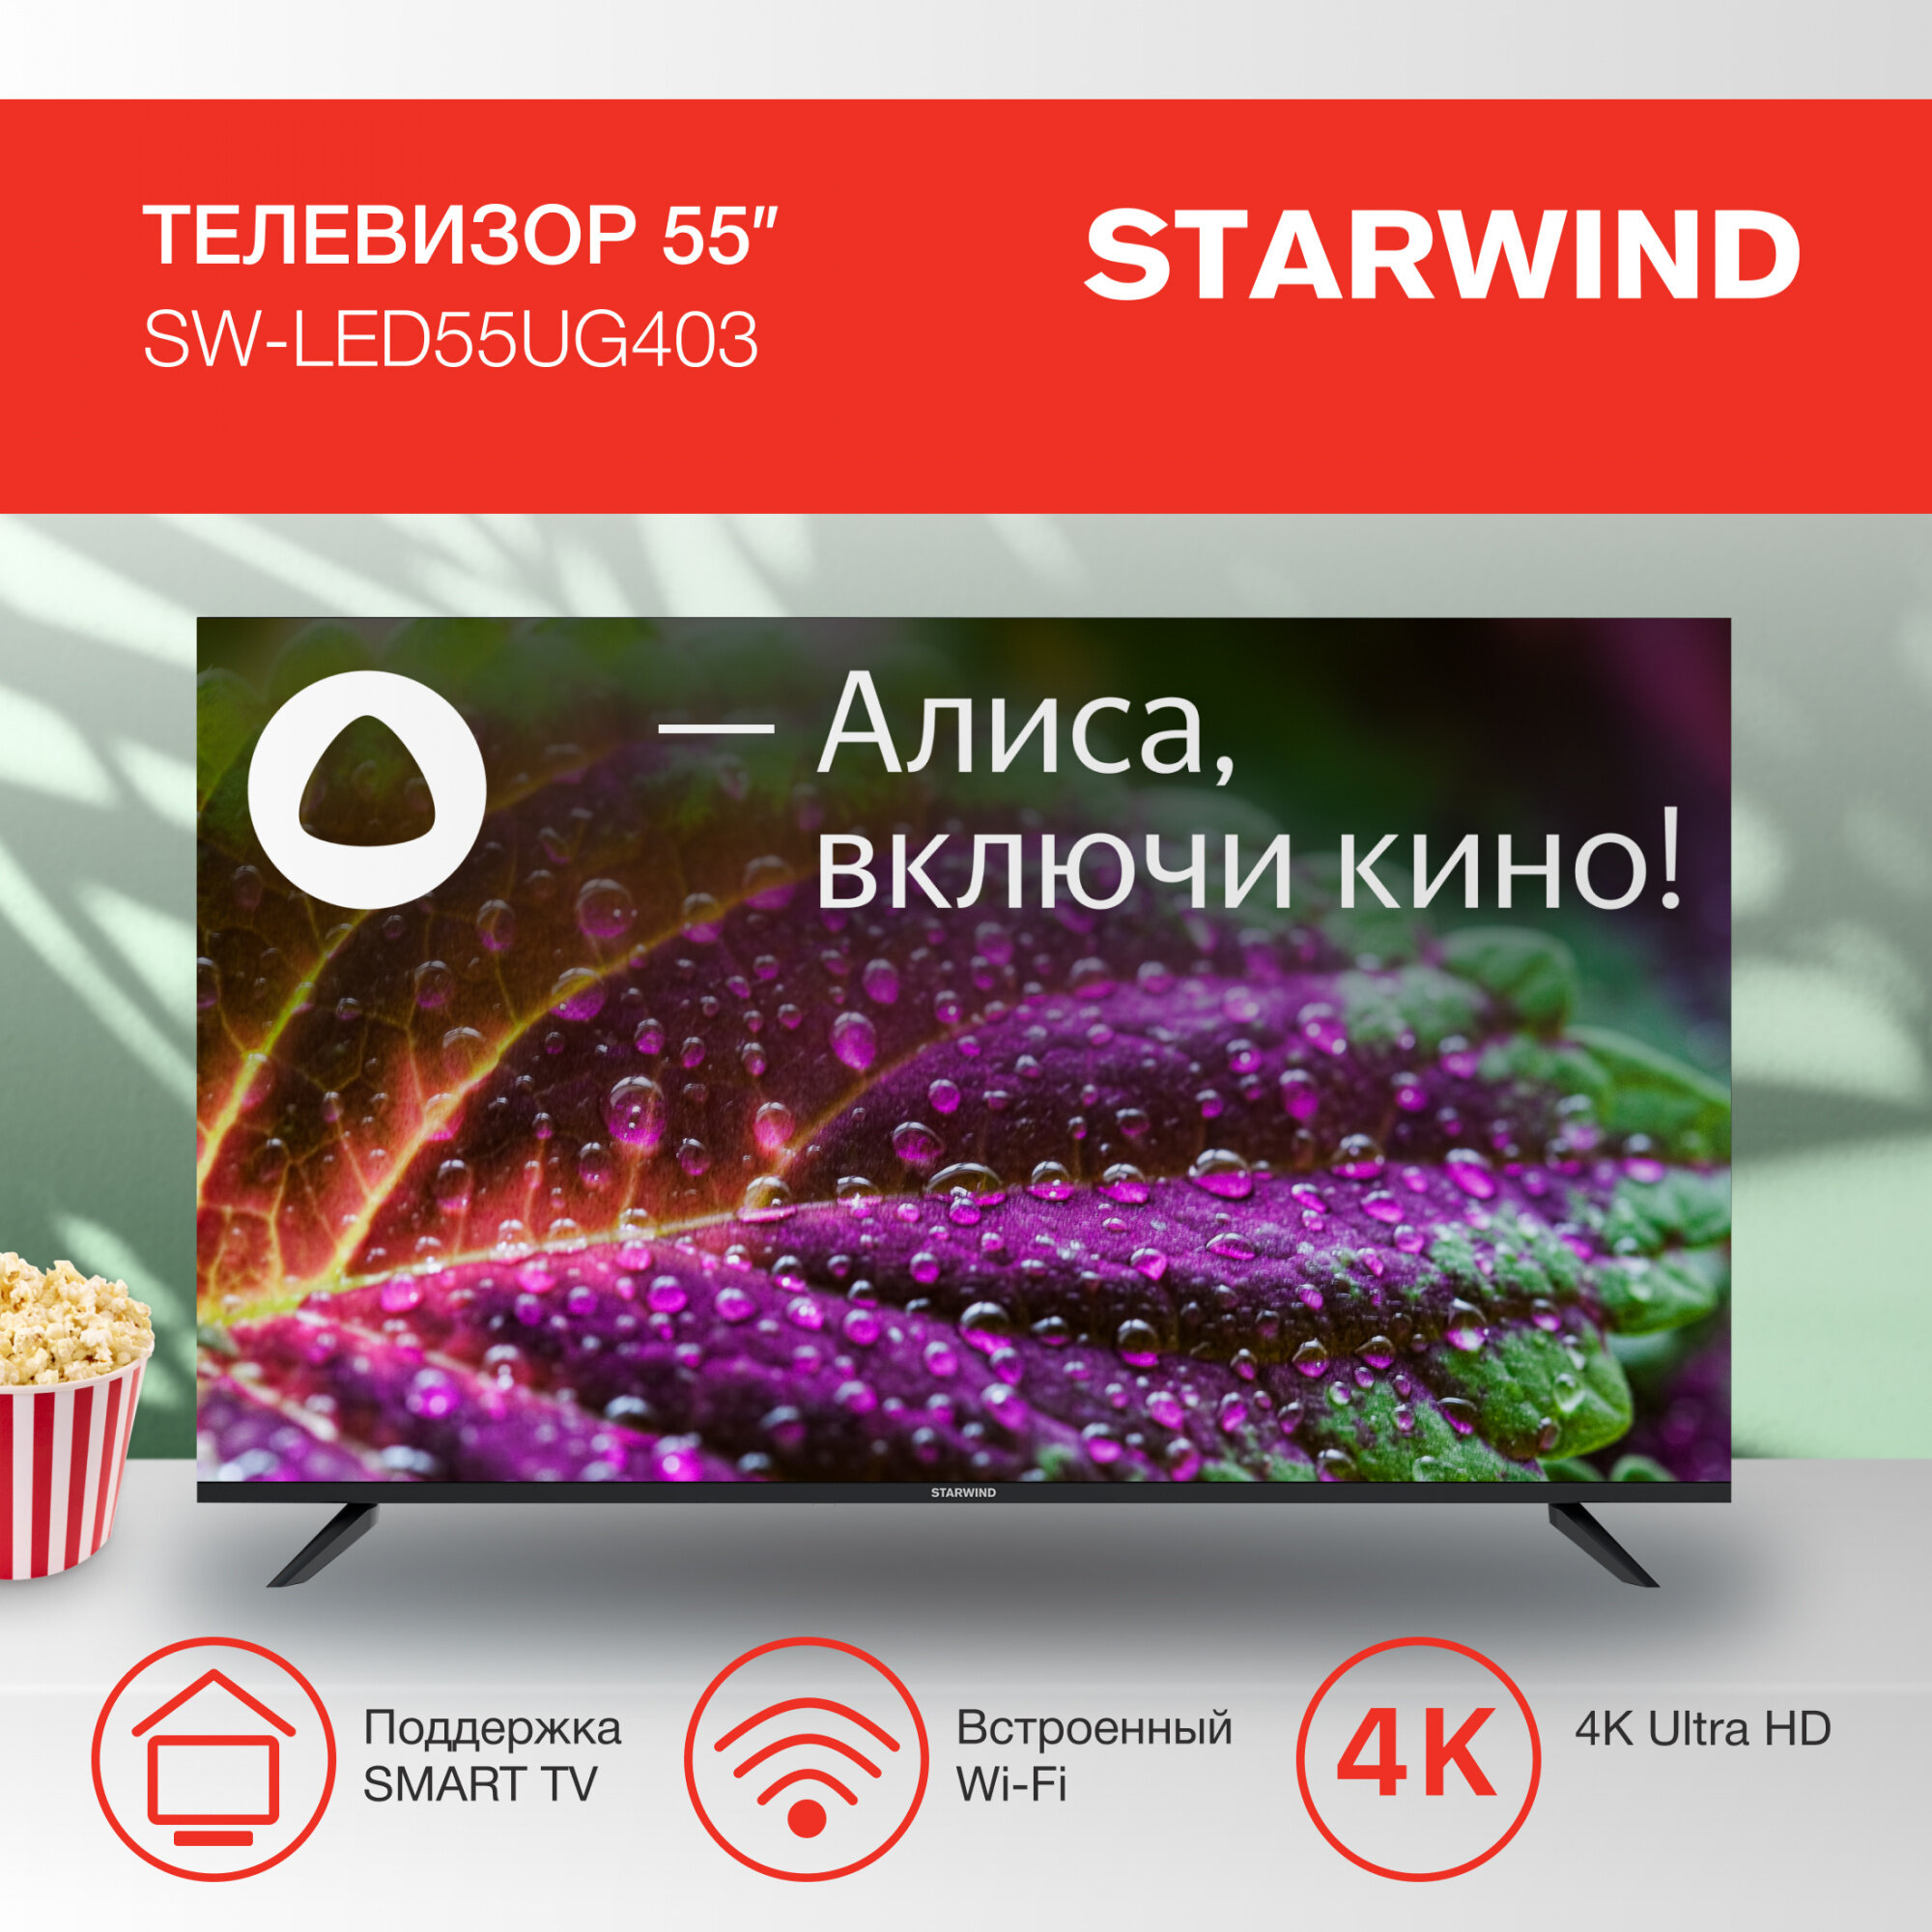 Телевизор Starwind Яндекс.ТВ SW-LED55UG403, 55", LED, 4K Ultra HD, Яндекс.ТВ, черный - фото №20